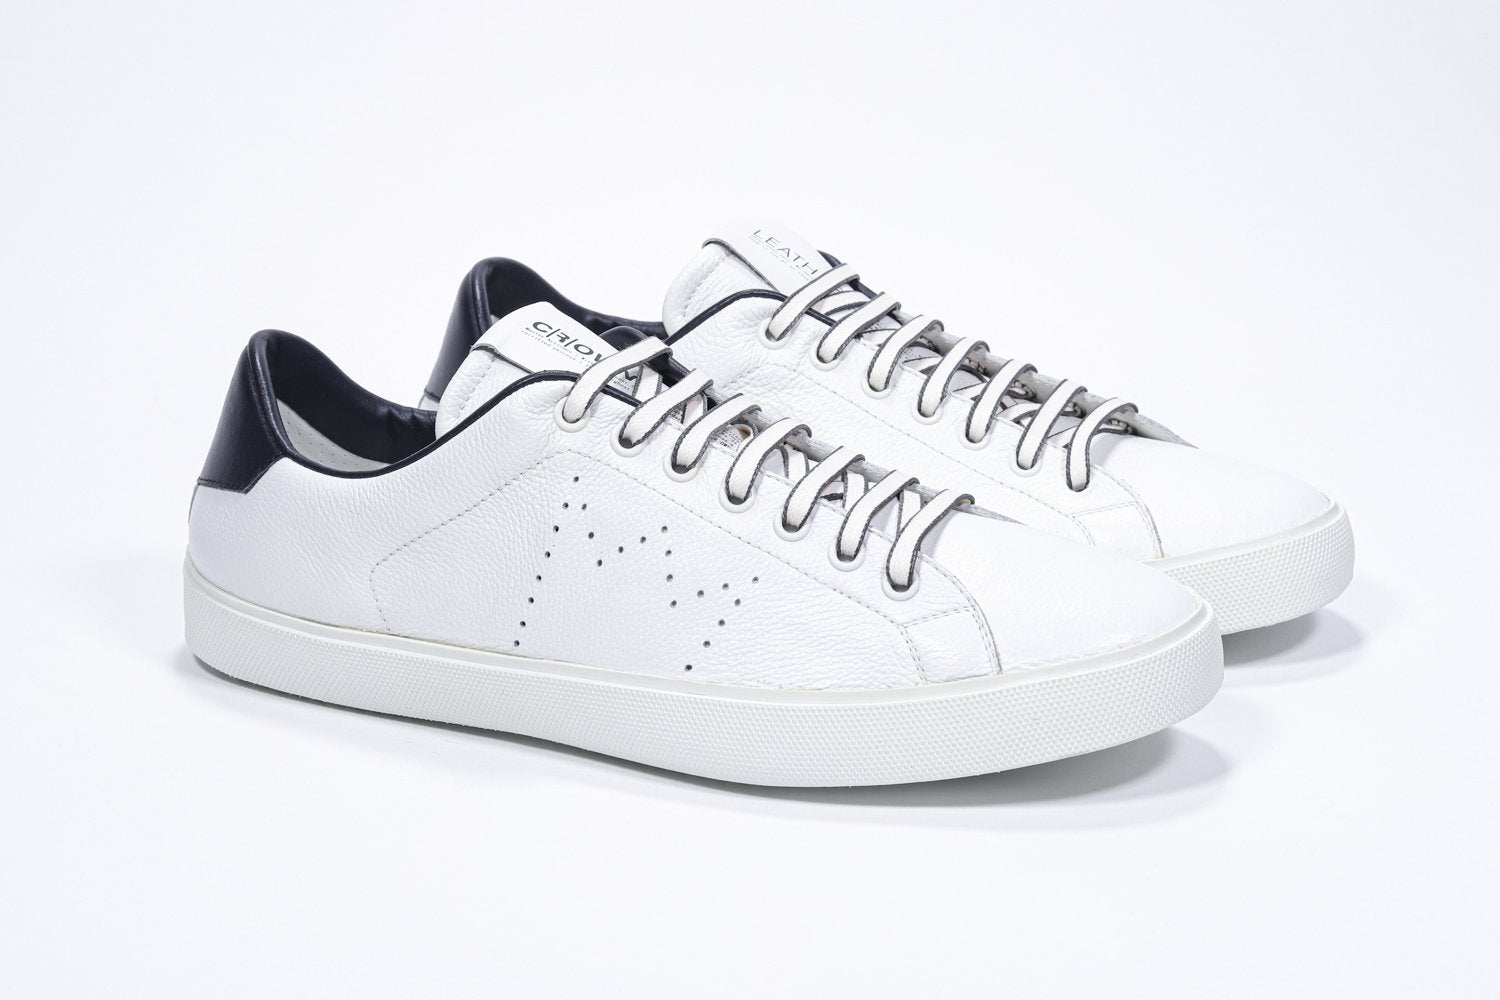 Tre quarti di BASSE  sneaker  bianco con dettagli navy e logo della corona traforato sulla tomaia. Tomaia in pelle e suola in gomma bianca.